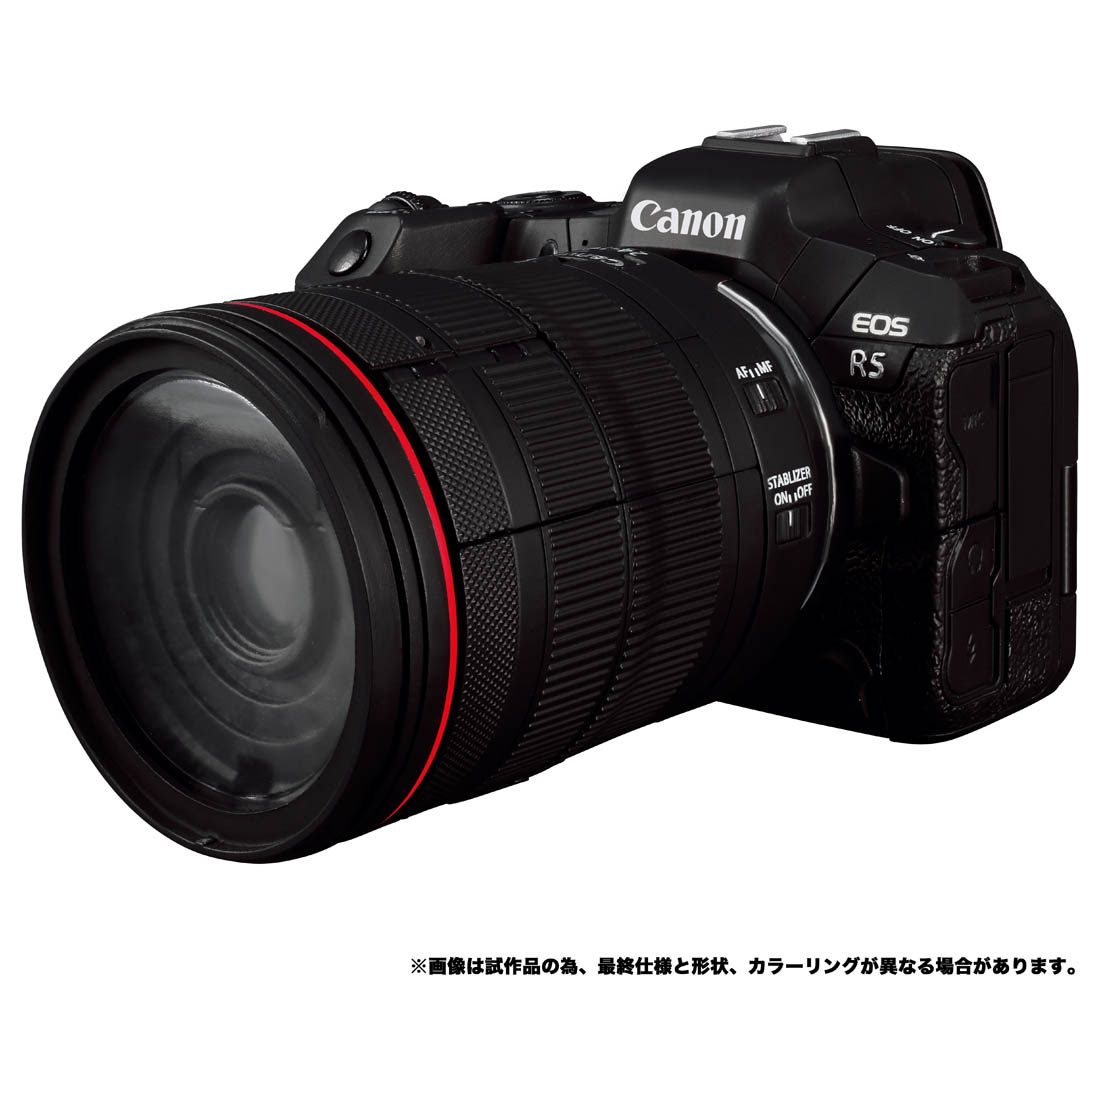 トランスフォーマー『Canon/TRANSFORMERS ネメシスプライムR5』可変可動フィギュア-007